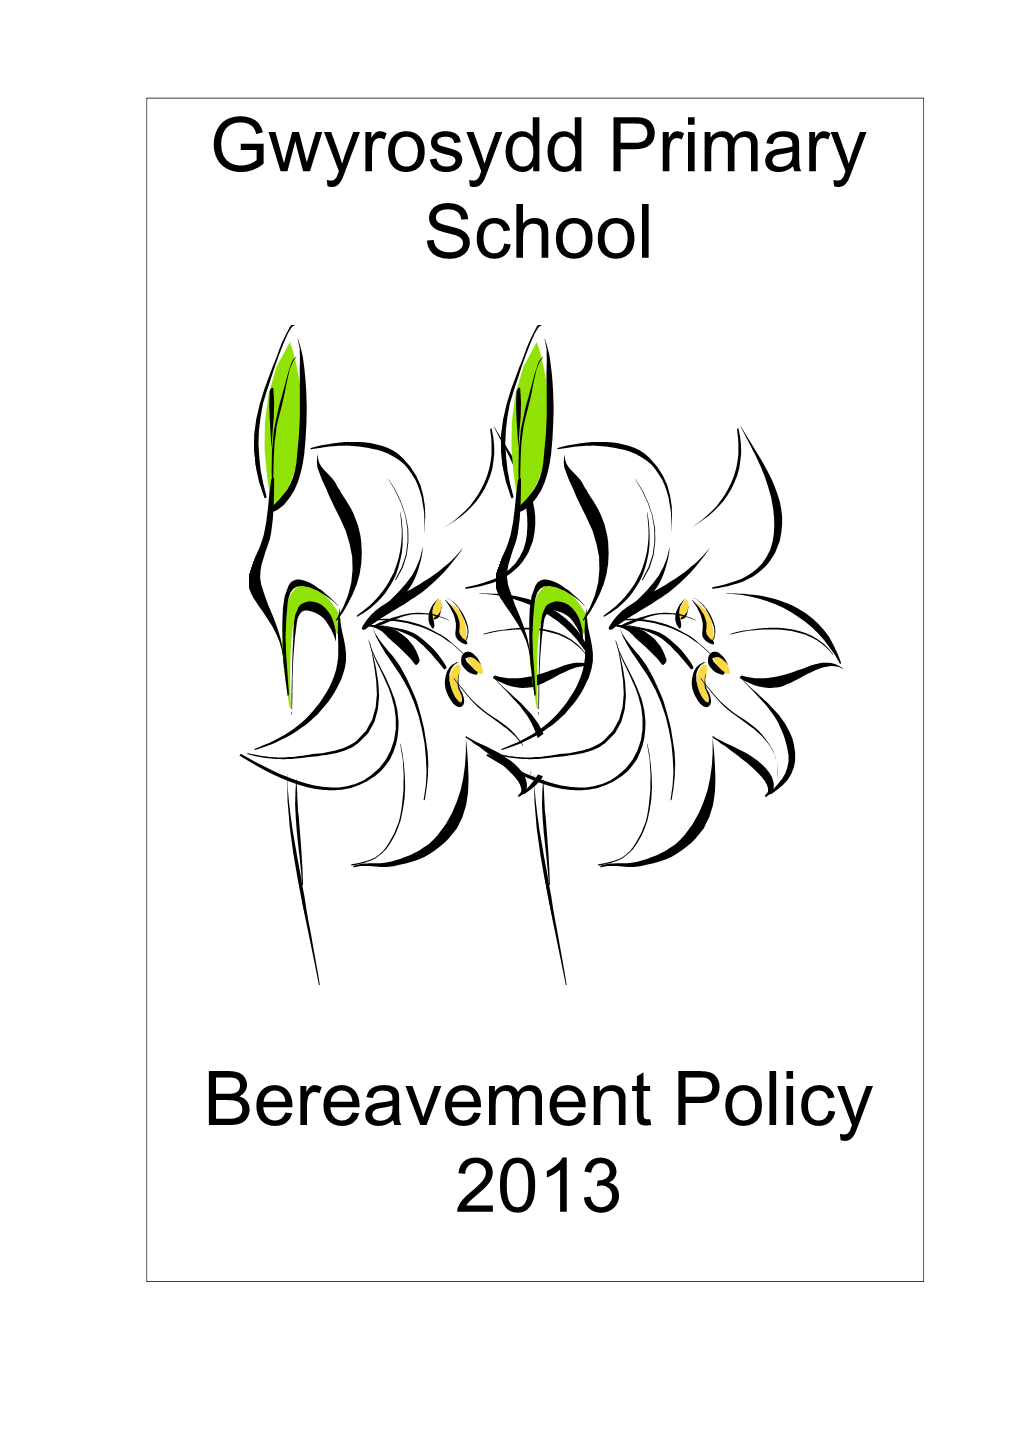 Gwyrosydd Primary School-Bereavement Policy